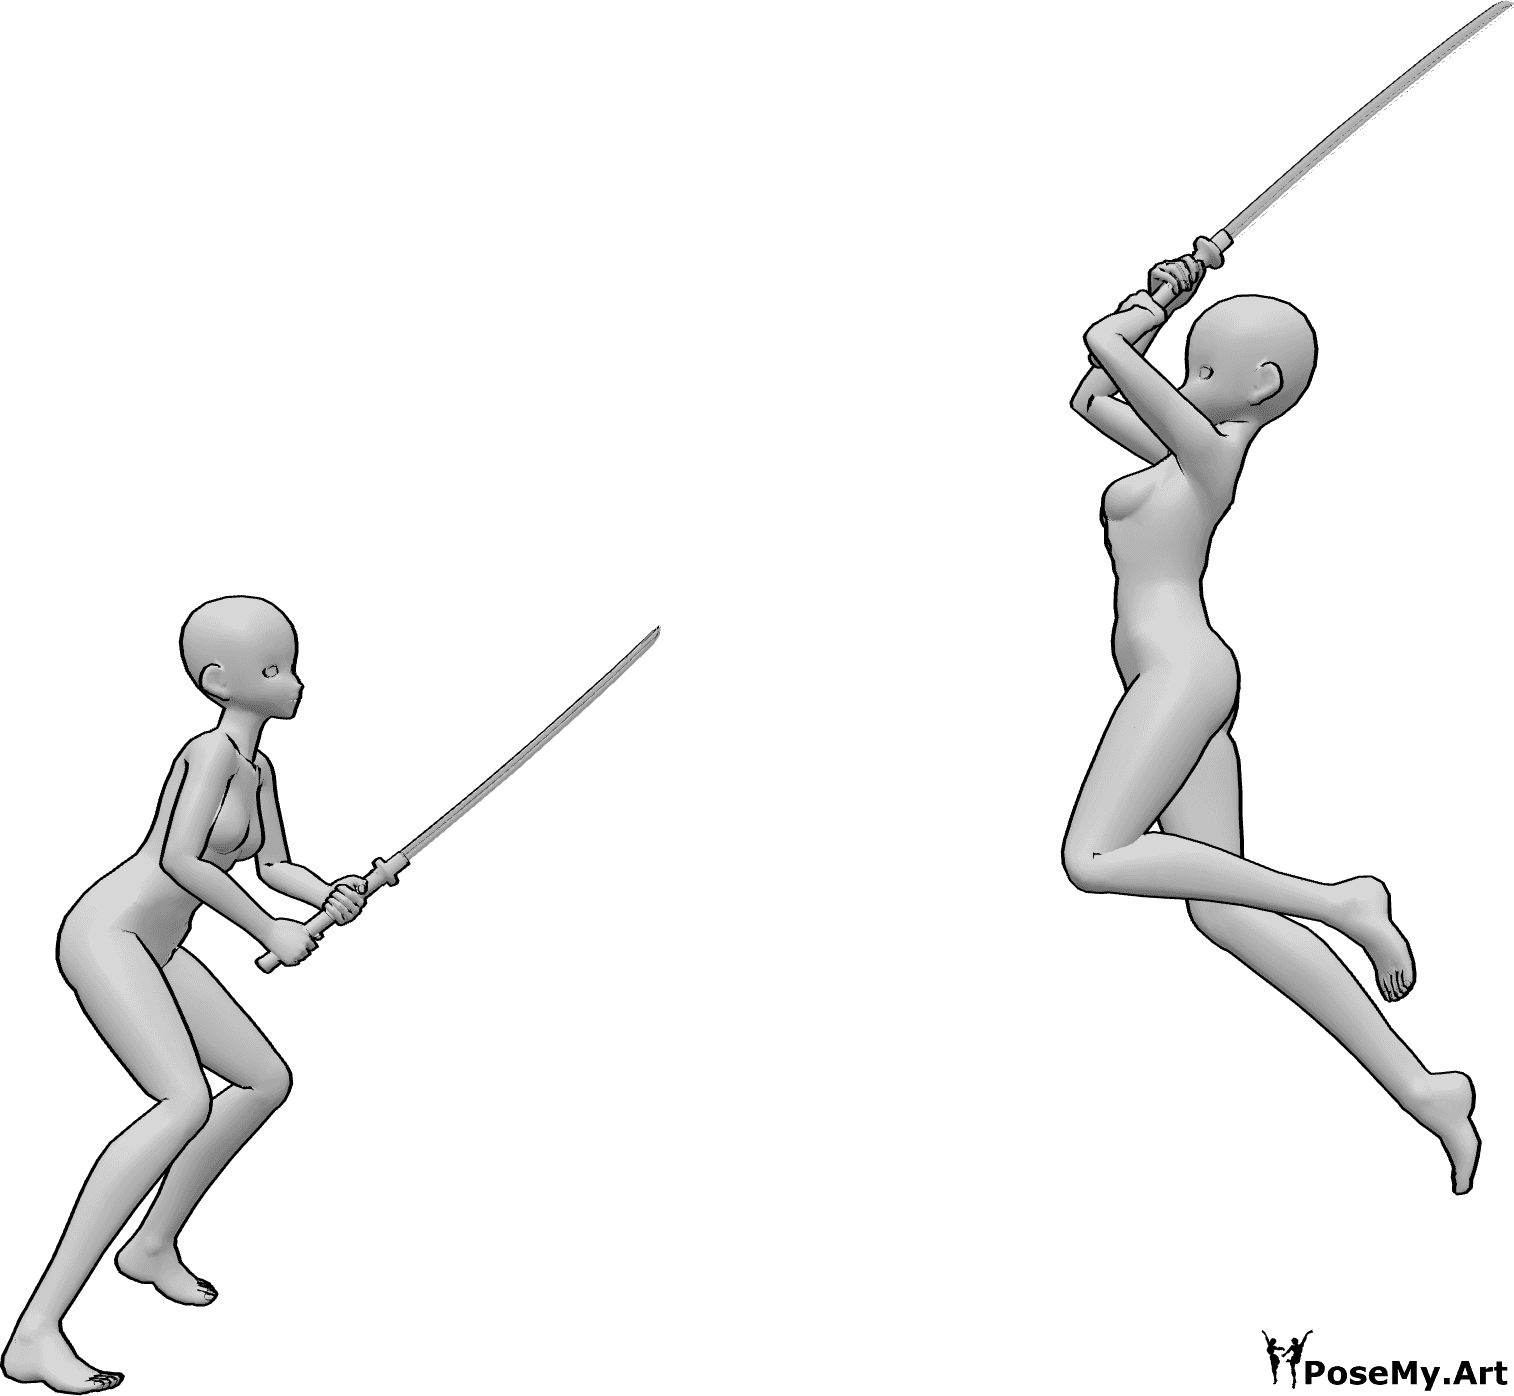 Référence des poses- Anime katana fighting pose - Des femmes d'animation se battent avec des katanas, l'une d'entre elles saute en l'air pour frapper.